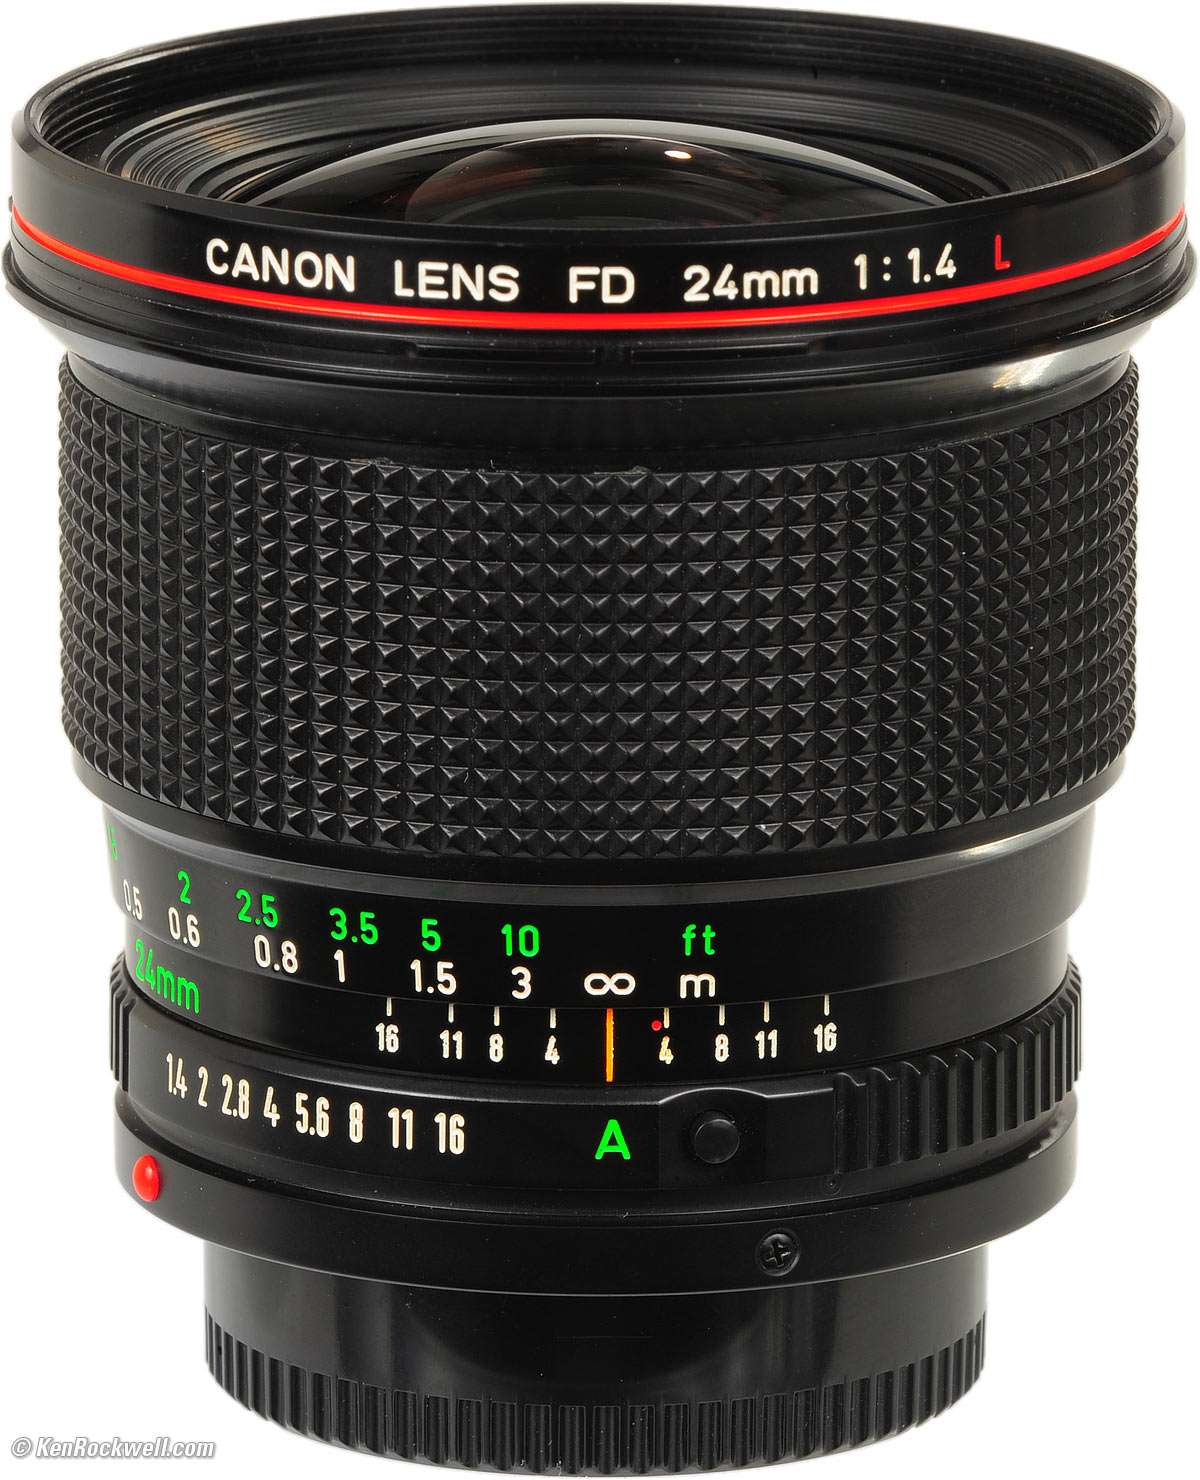 カメラ レンズ(ズーム) Canon FD 24mm f/1.4 L